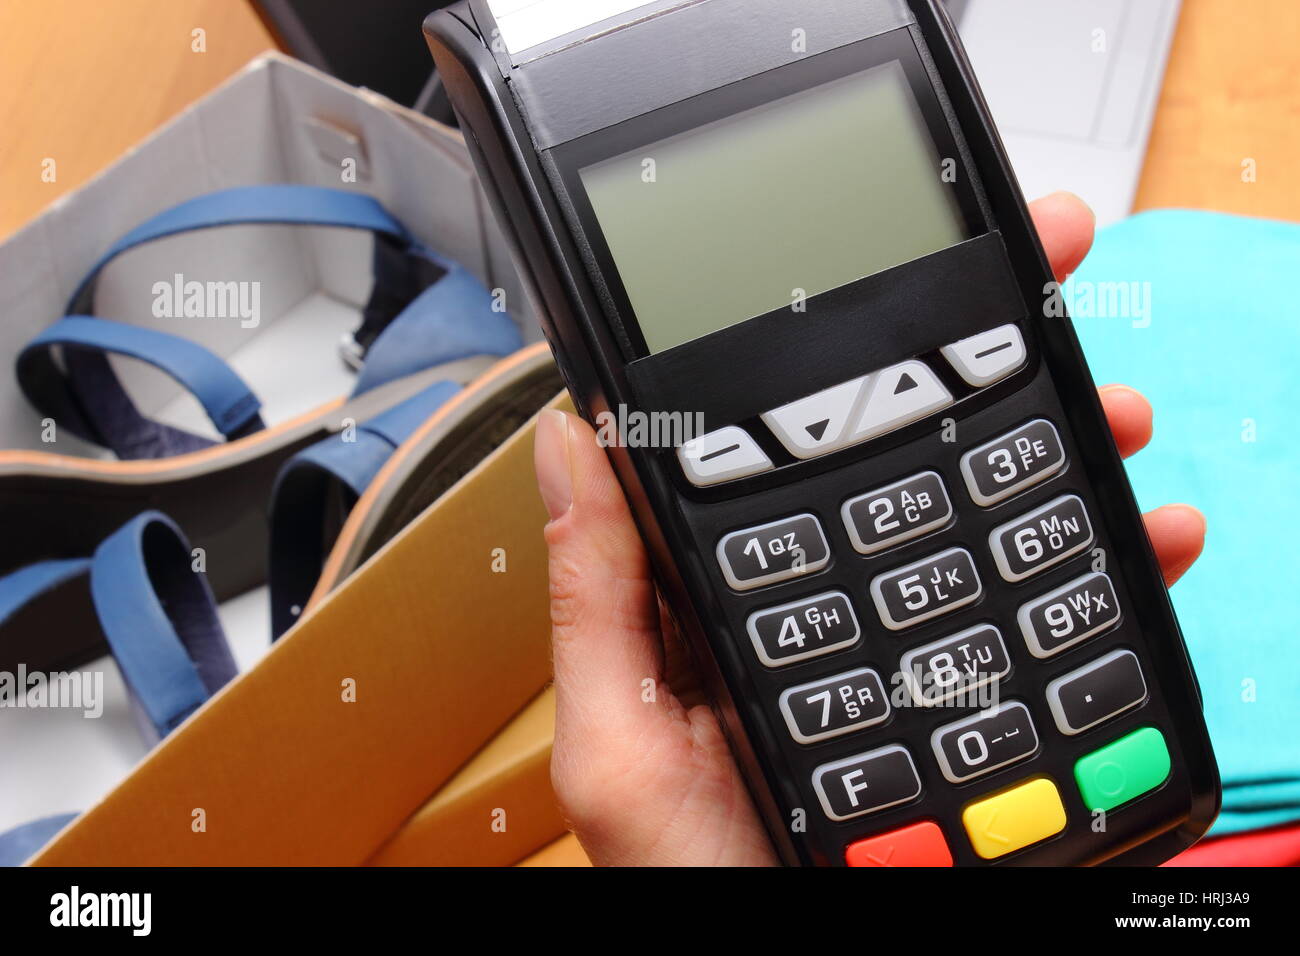 Utiliser un terminal de paiement pour payer vos achats en magasin,  saisissez un numéro d'identification personnel, lecteur de carte de crédit,  les vêtements et l'ordinateur portable, concept finance Photo Stock - Alamy